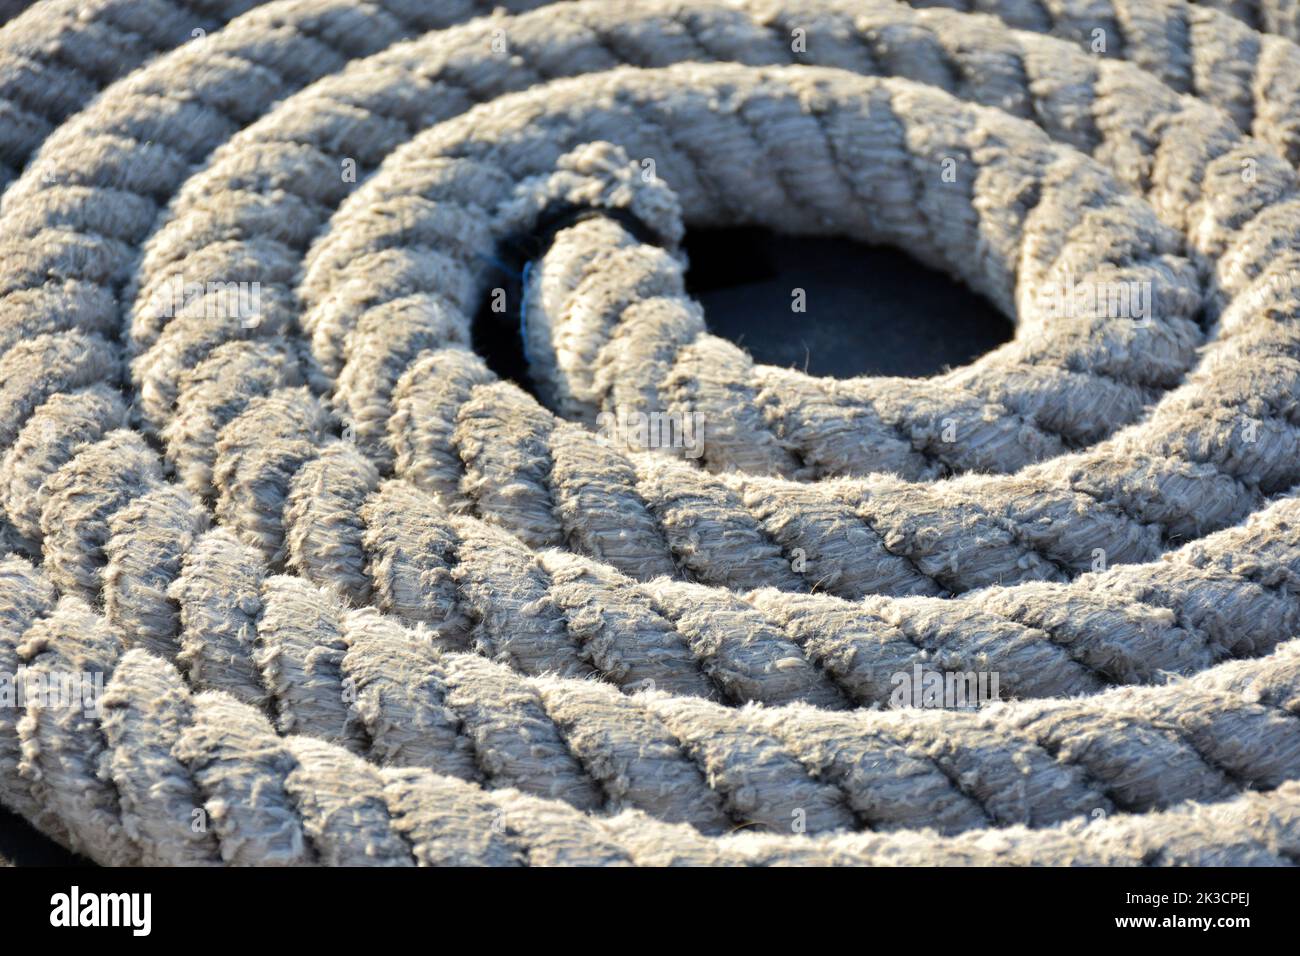 Detalle de cuerdas de barco enrolladas Stock Photo